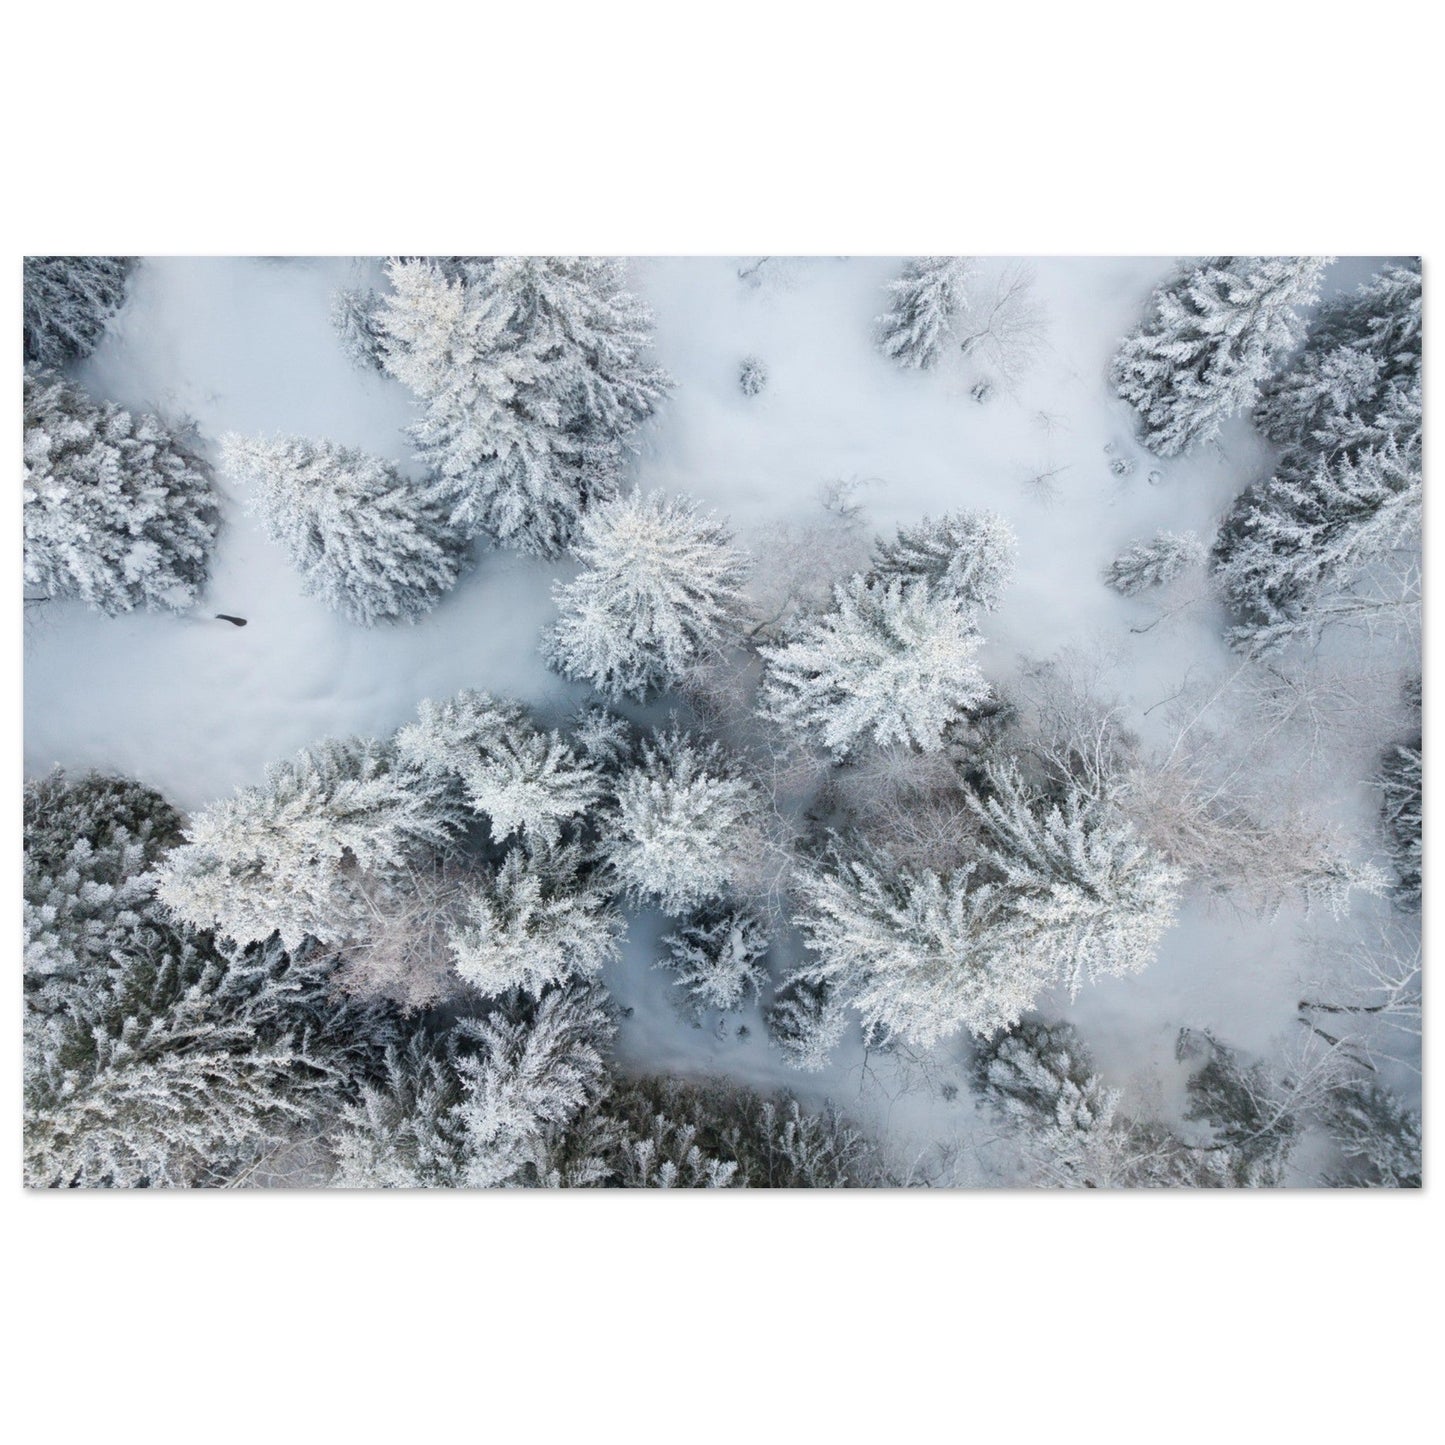 Vente Photo drone de sapins en neige - Tableau photo alu montagne